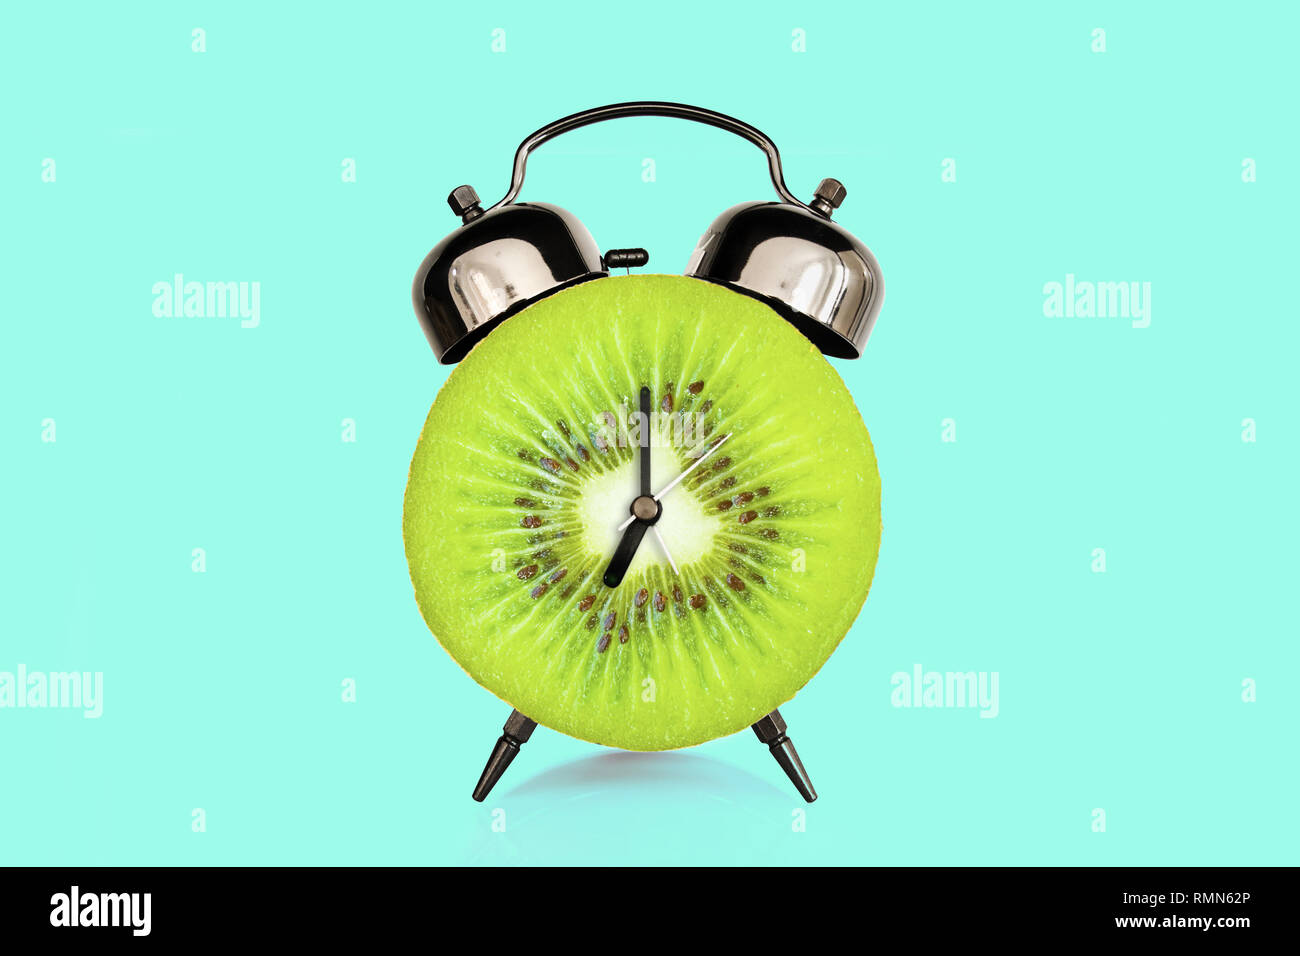 Rodaja de Kiwi reloj alarma, azul pastel. fondo de frutas y vitaminas dieta al concepto de nutrición desayuno Foto de stock